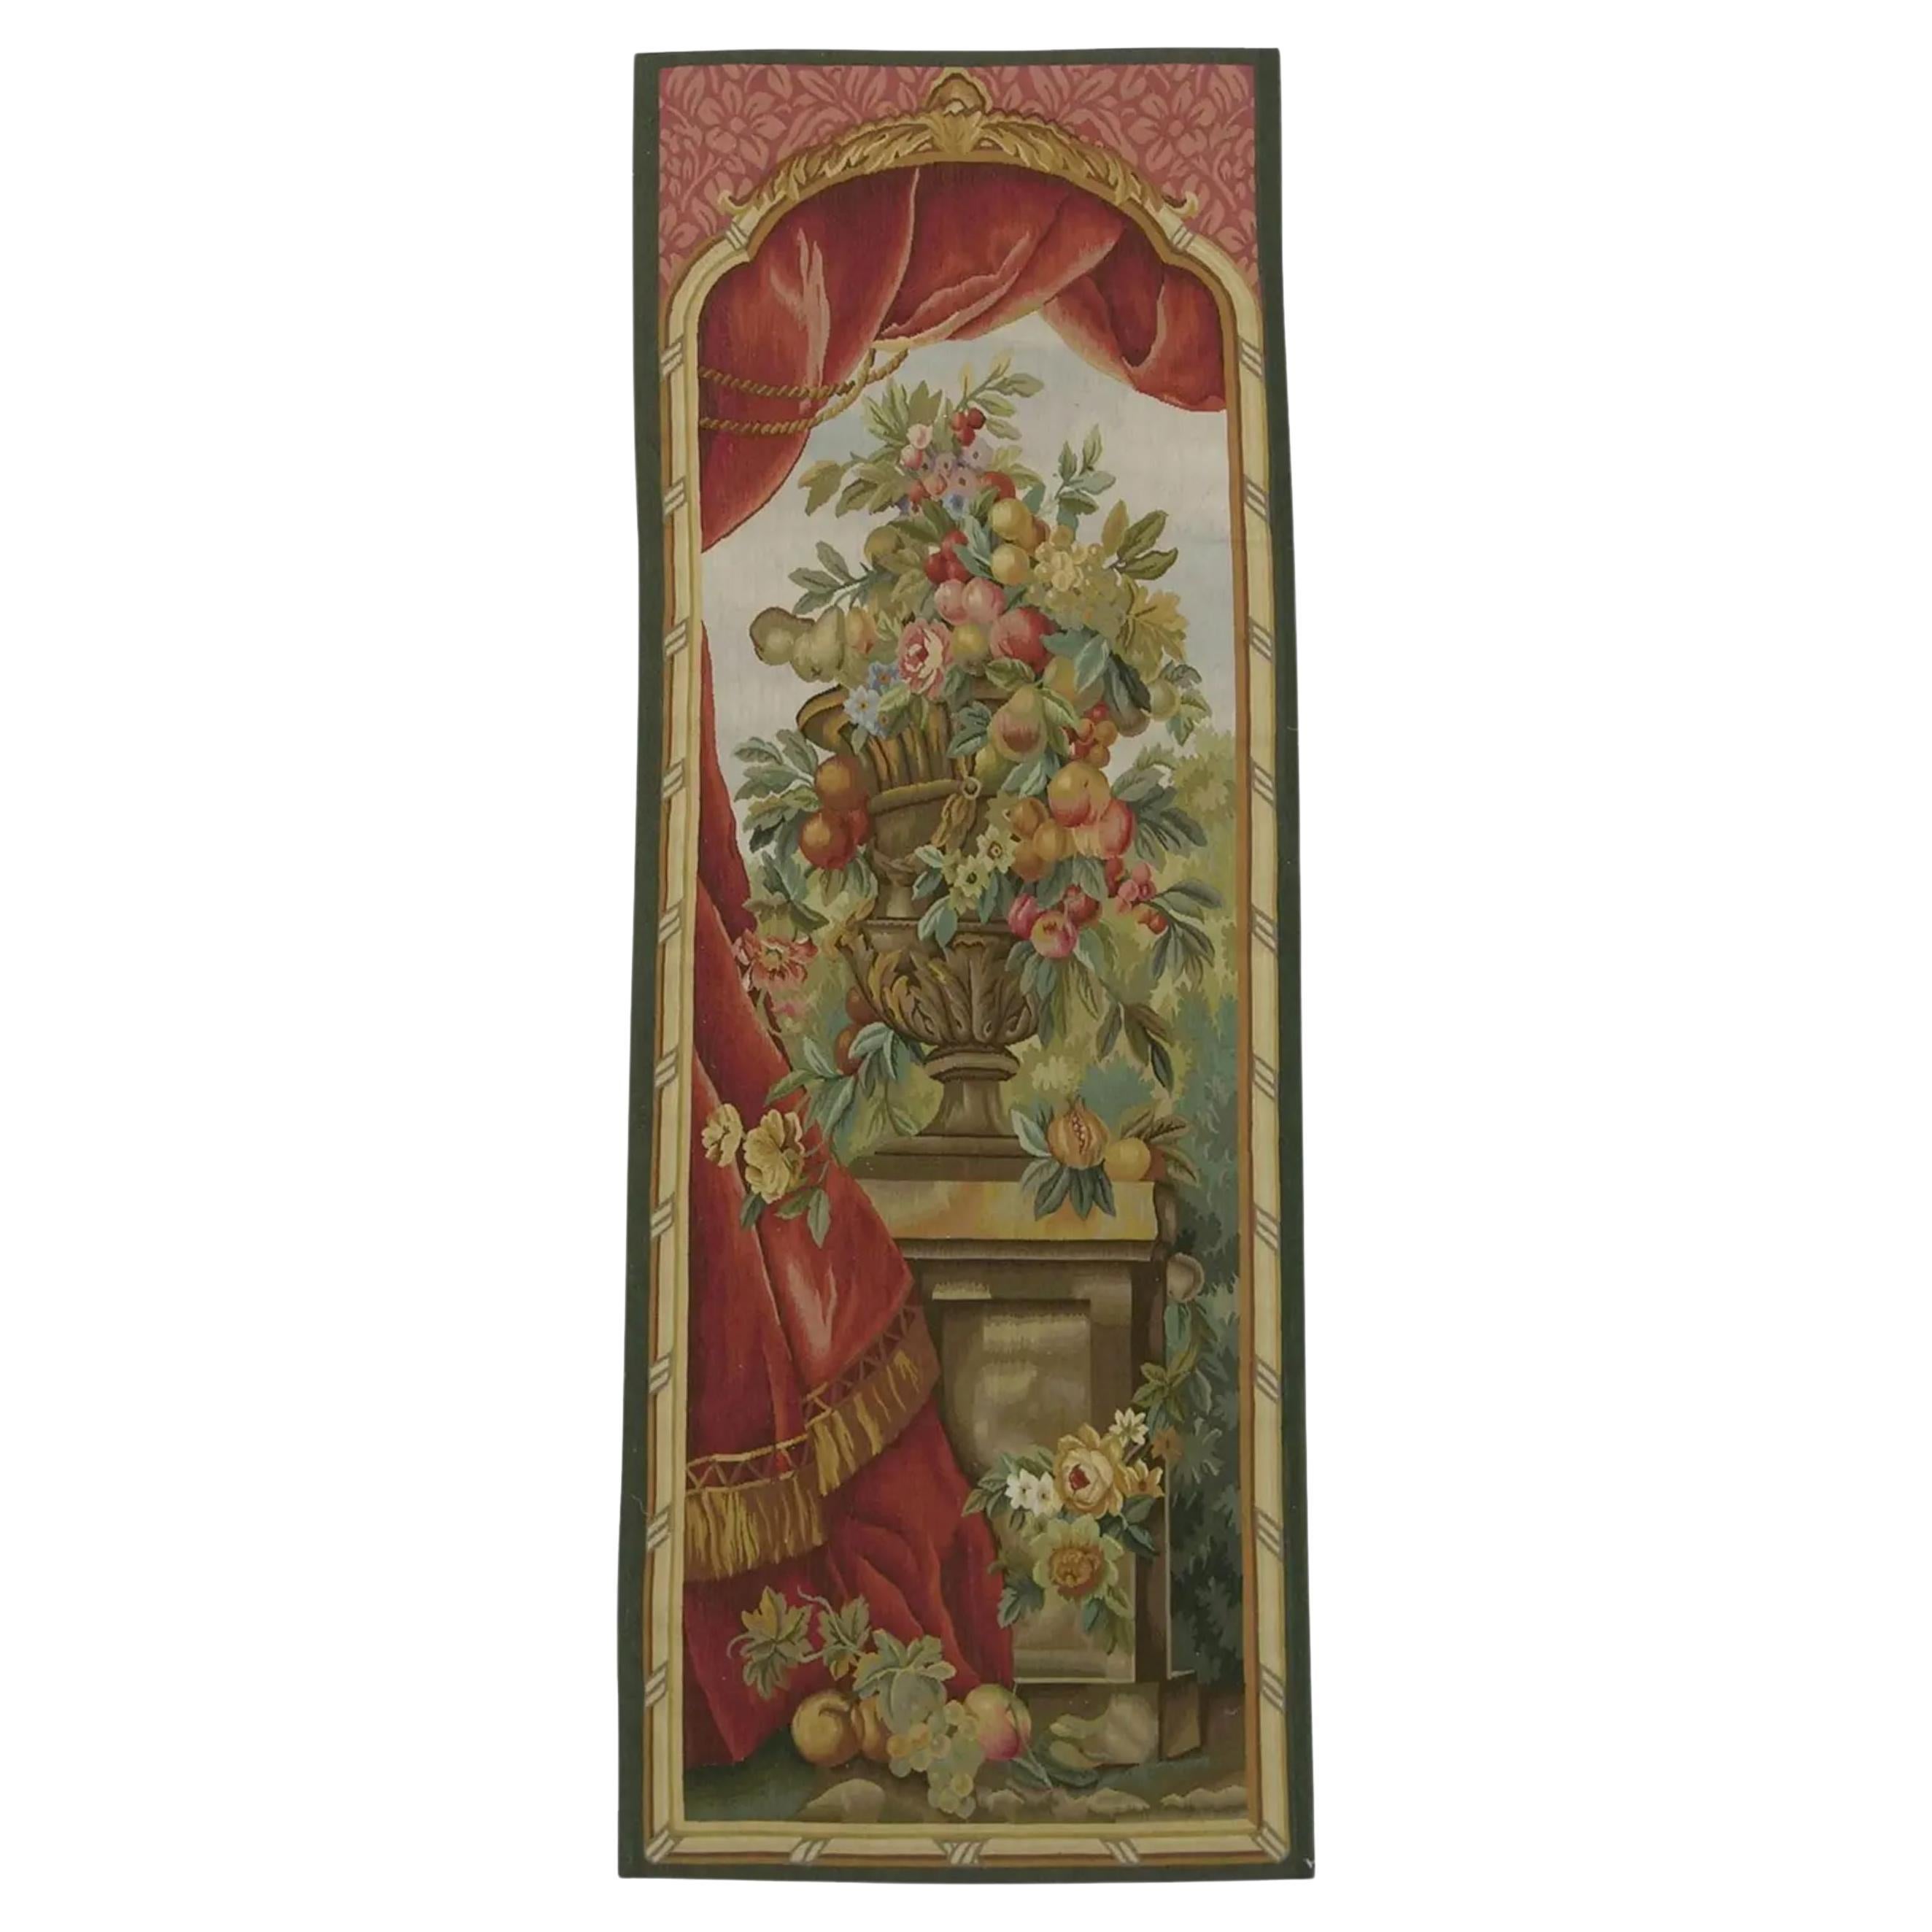 Wandteppich mit der Darstellung einer königlichen Vase 6.2X2.3